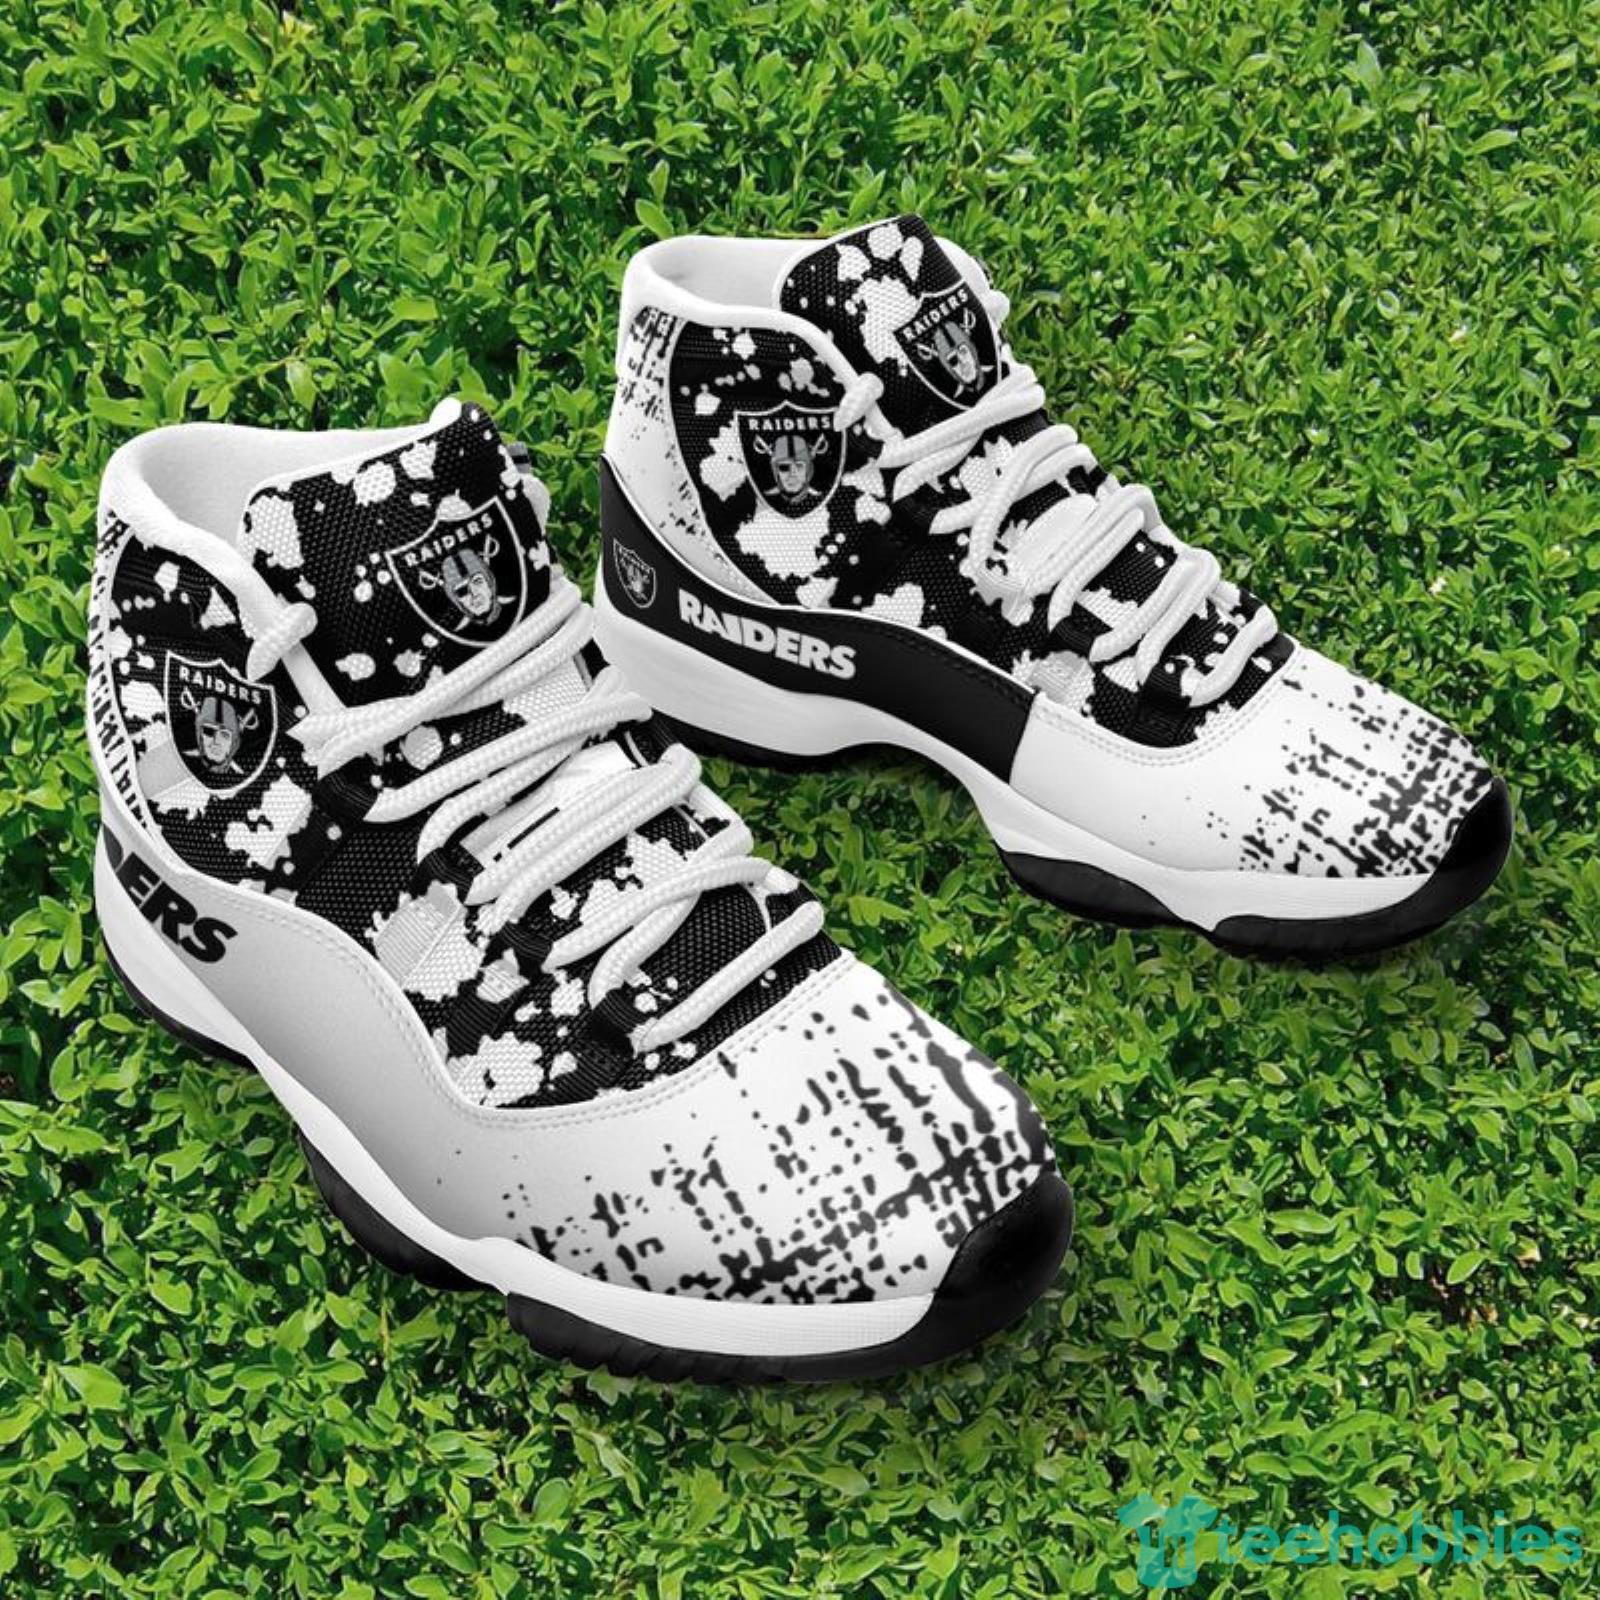 Las Vegas Raiders Snoopy Pattern Style Sneaker Air Jordan 11 Shoes